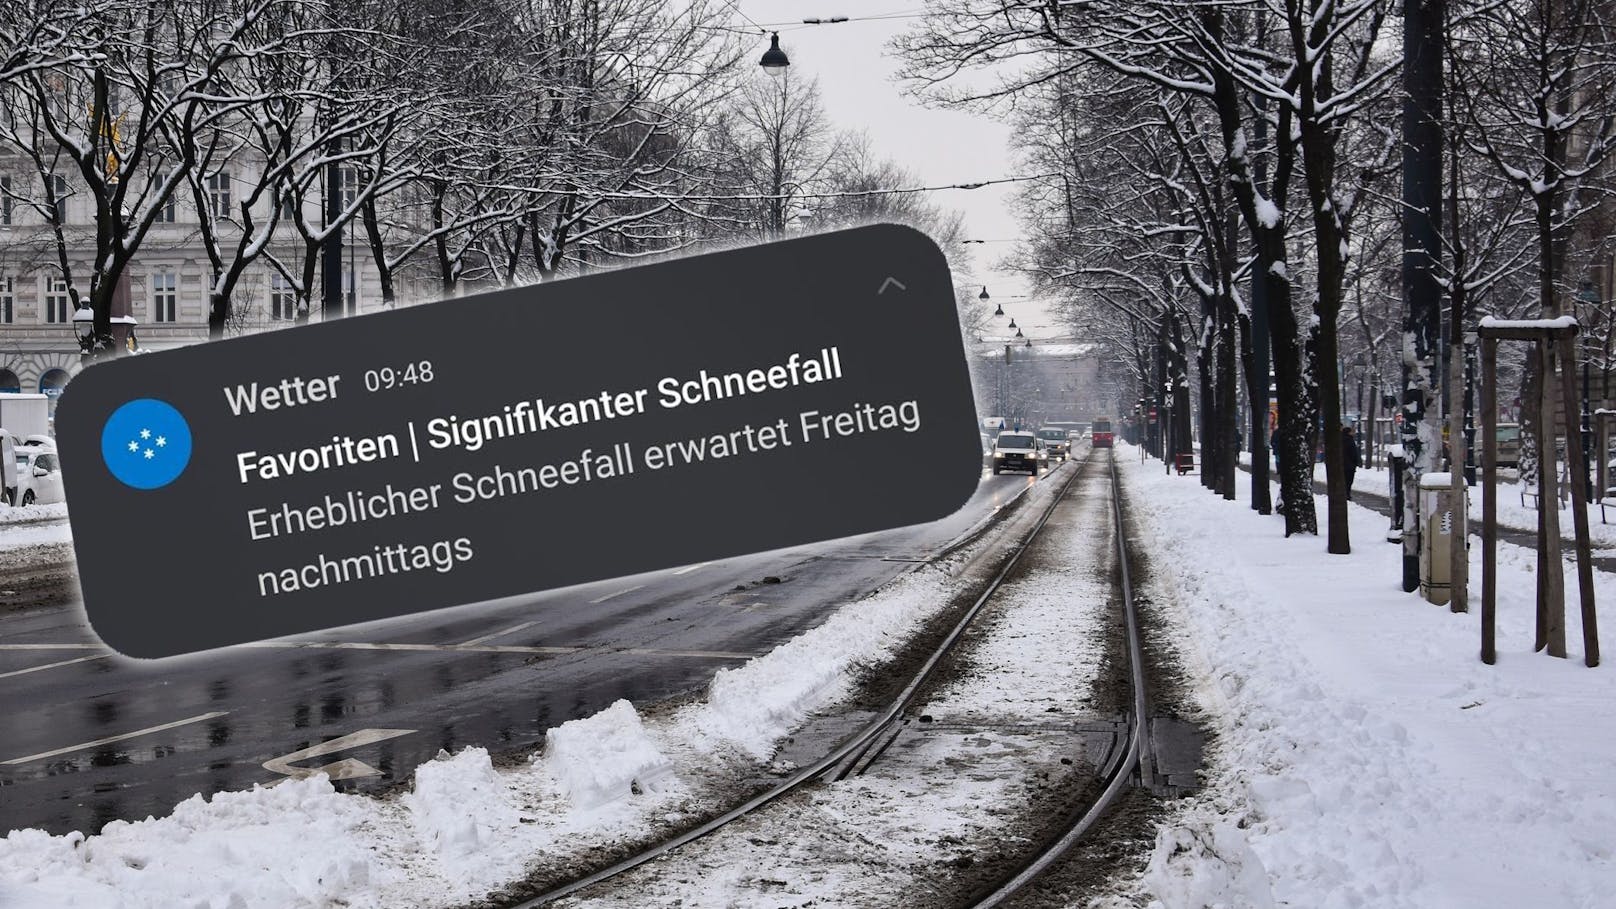 "Erheblicher" Schnee in Wien – Handys schlagen Alarm